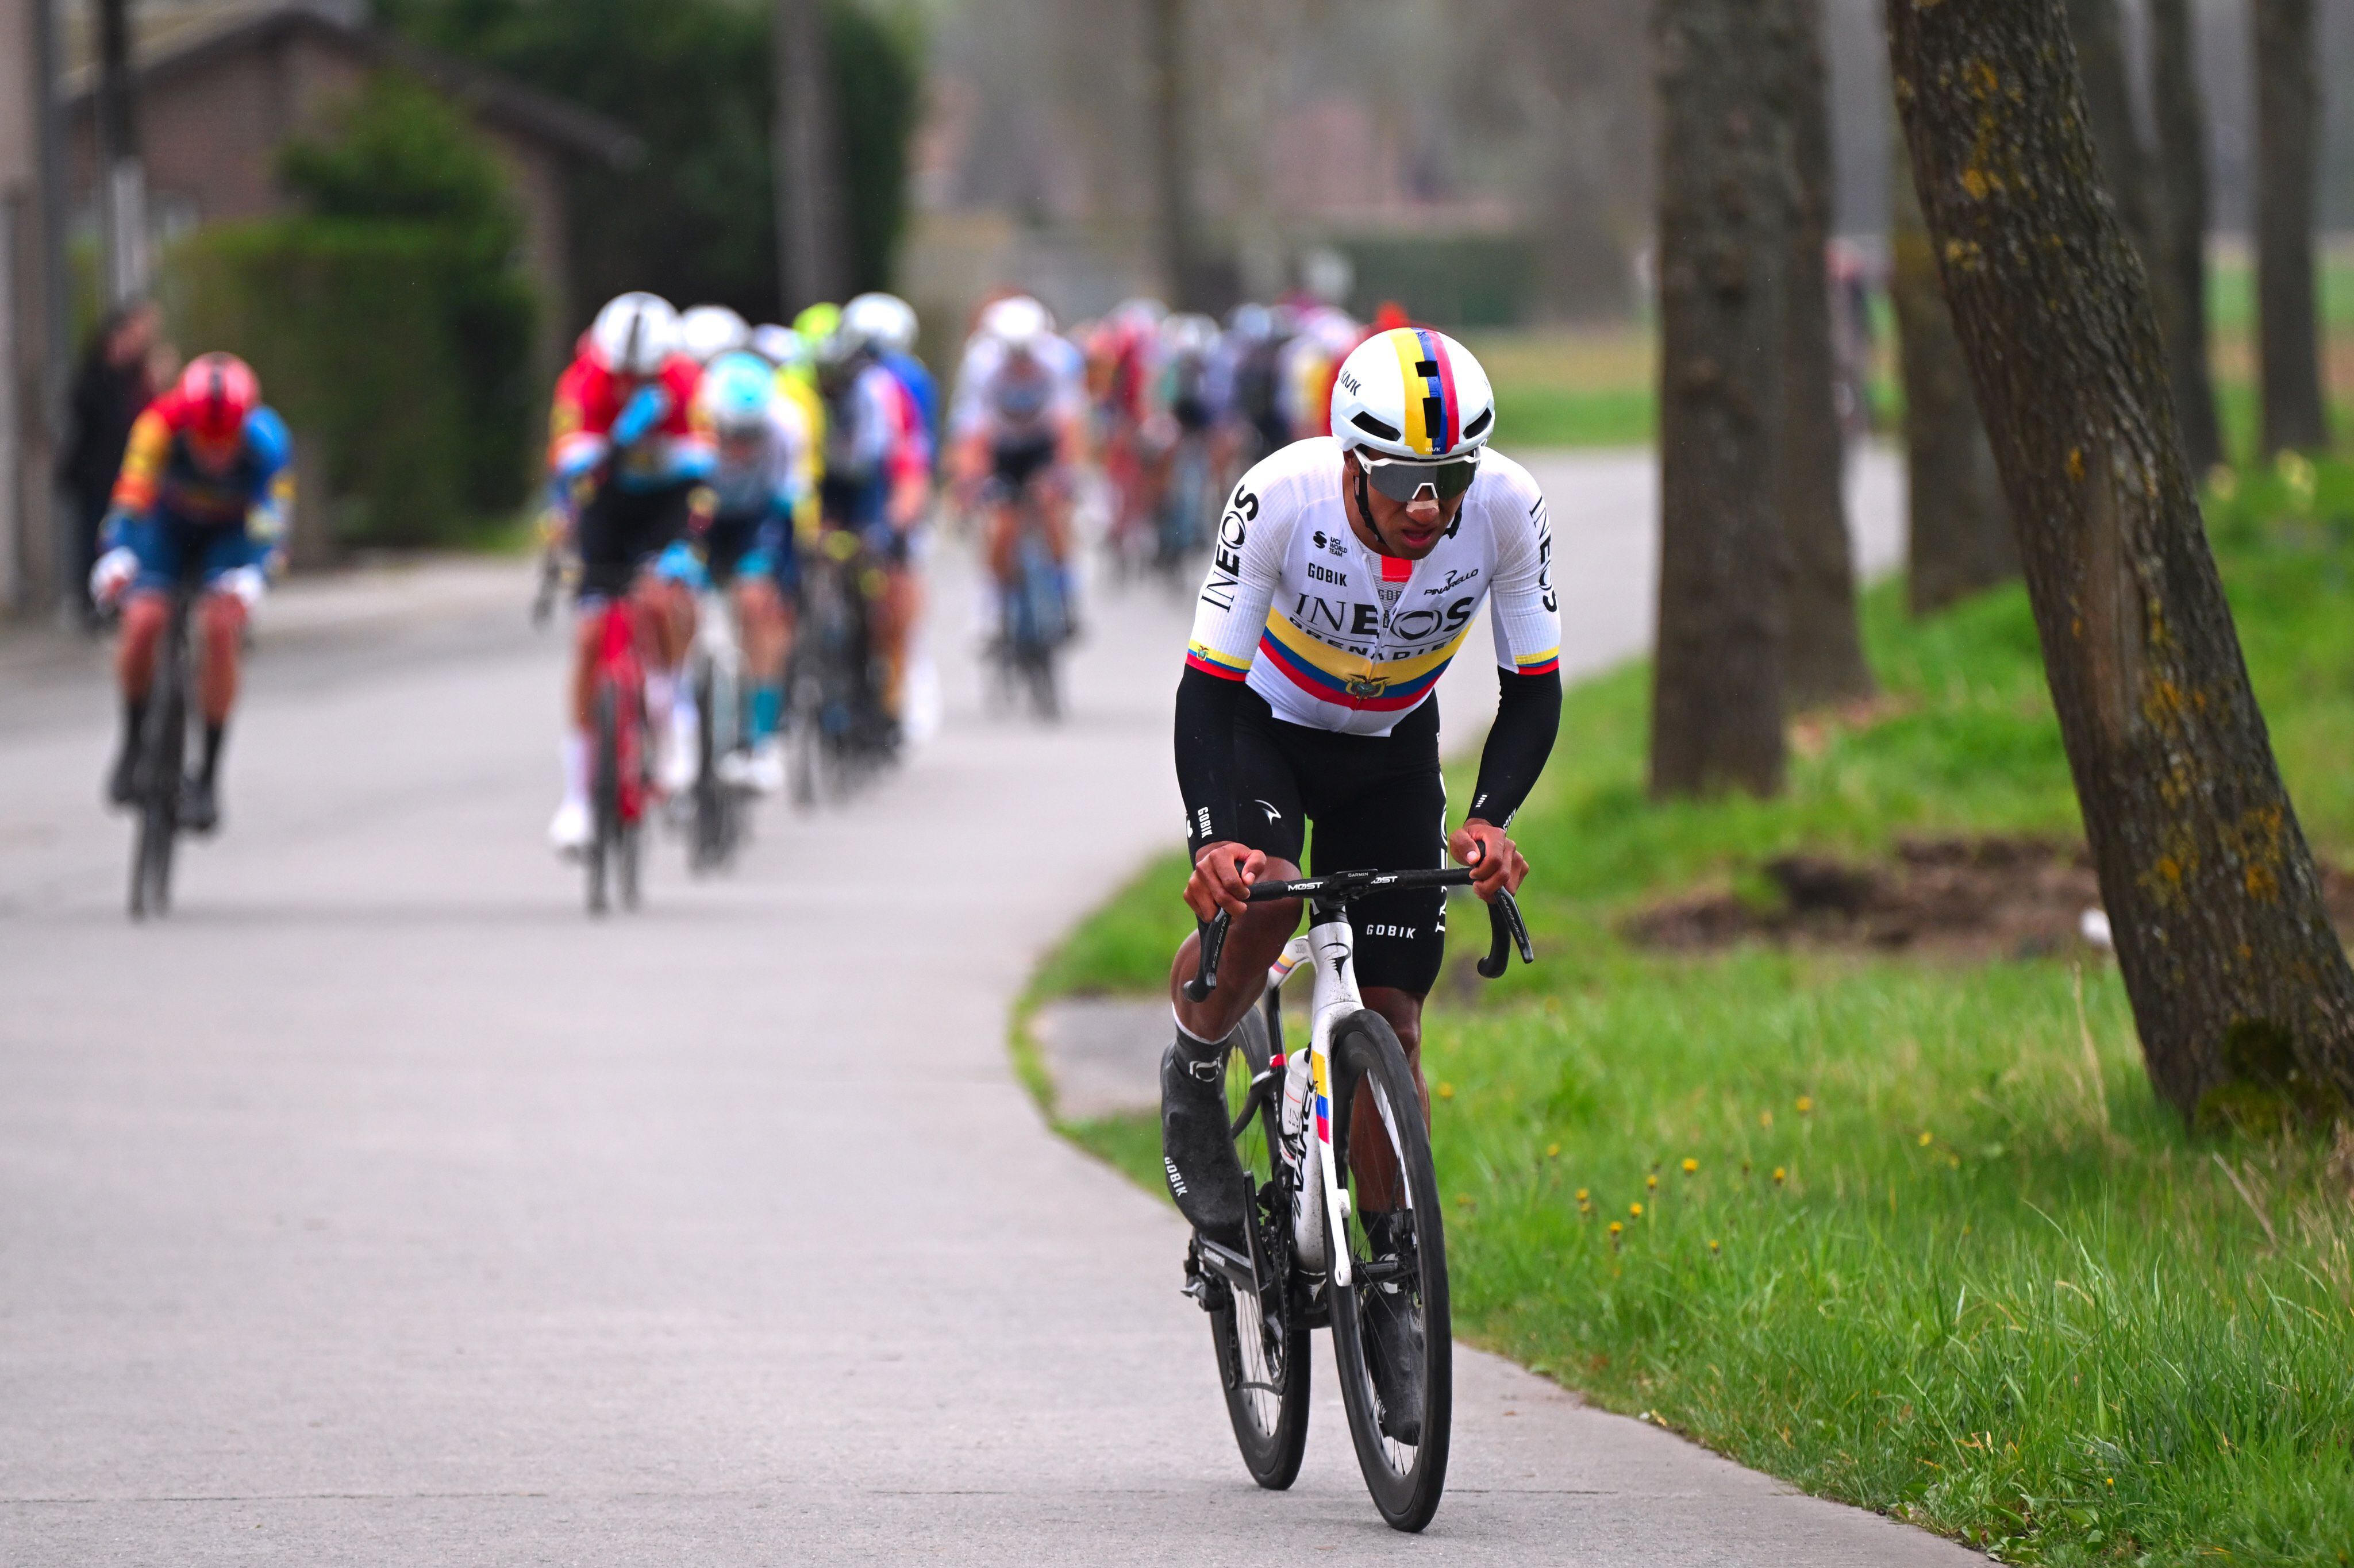 El sucumbisense Jhonatan Narváez lidera el ranking UCI para los ciclistas ecuatorianos, lo que lo pone en primera línea para obtener el boleto a París 2024 en la modalidad de ruta.